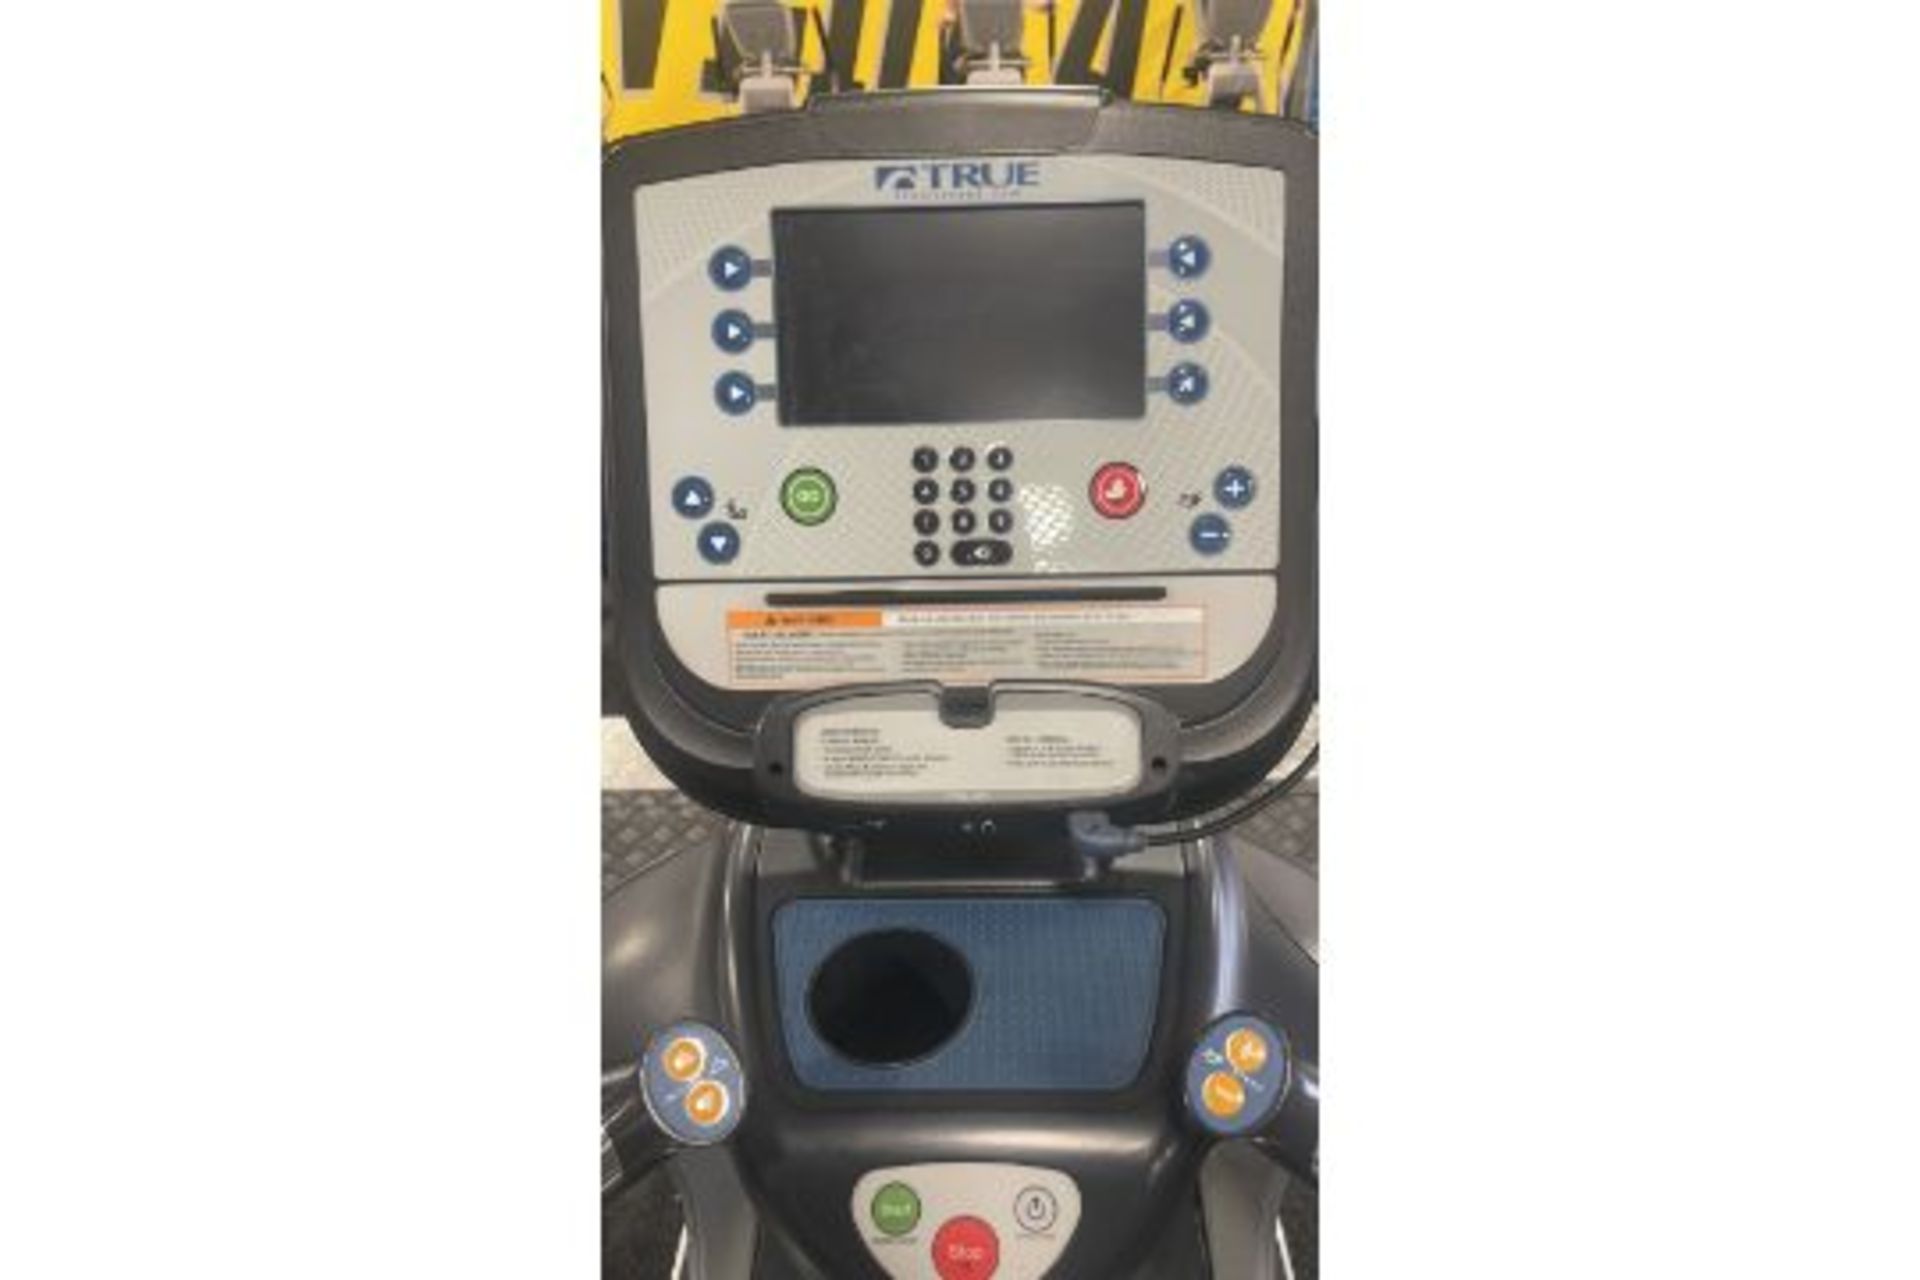 True Fitness 600 Treadmill - Image 2 of 5